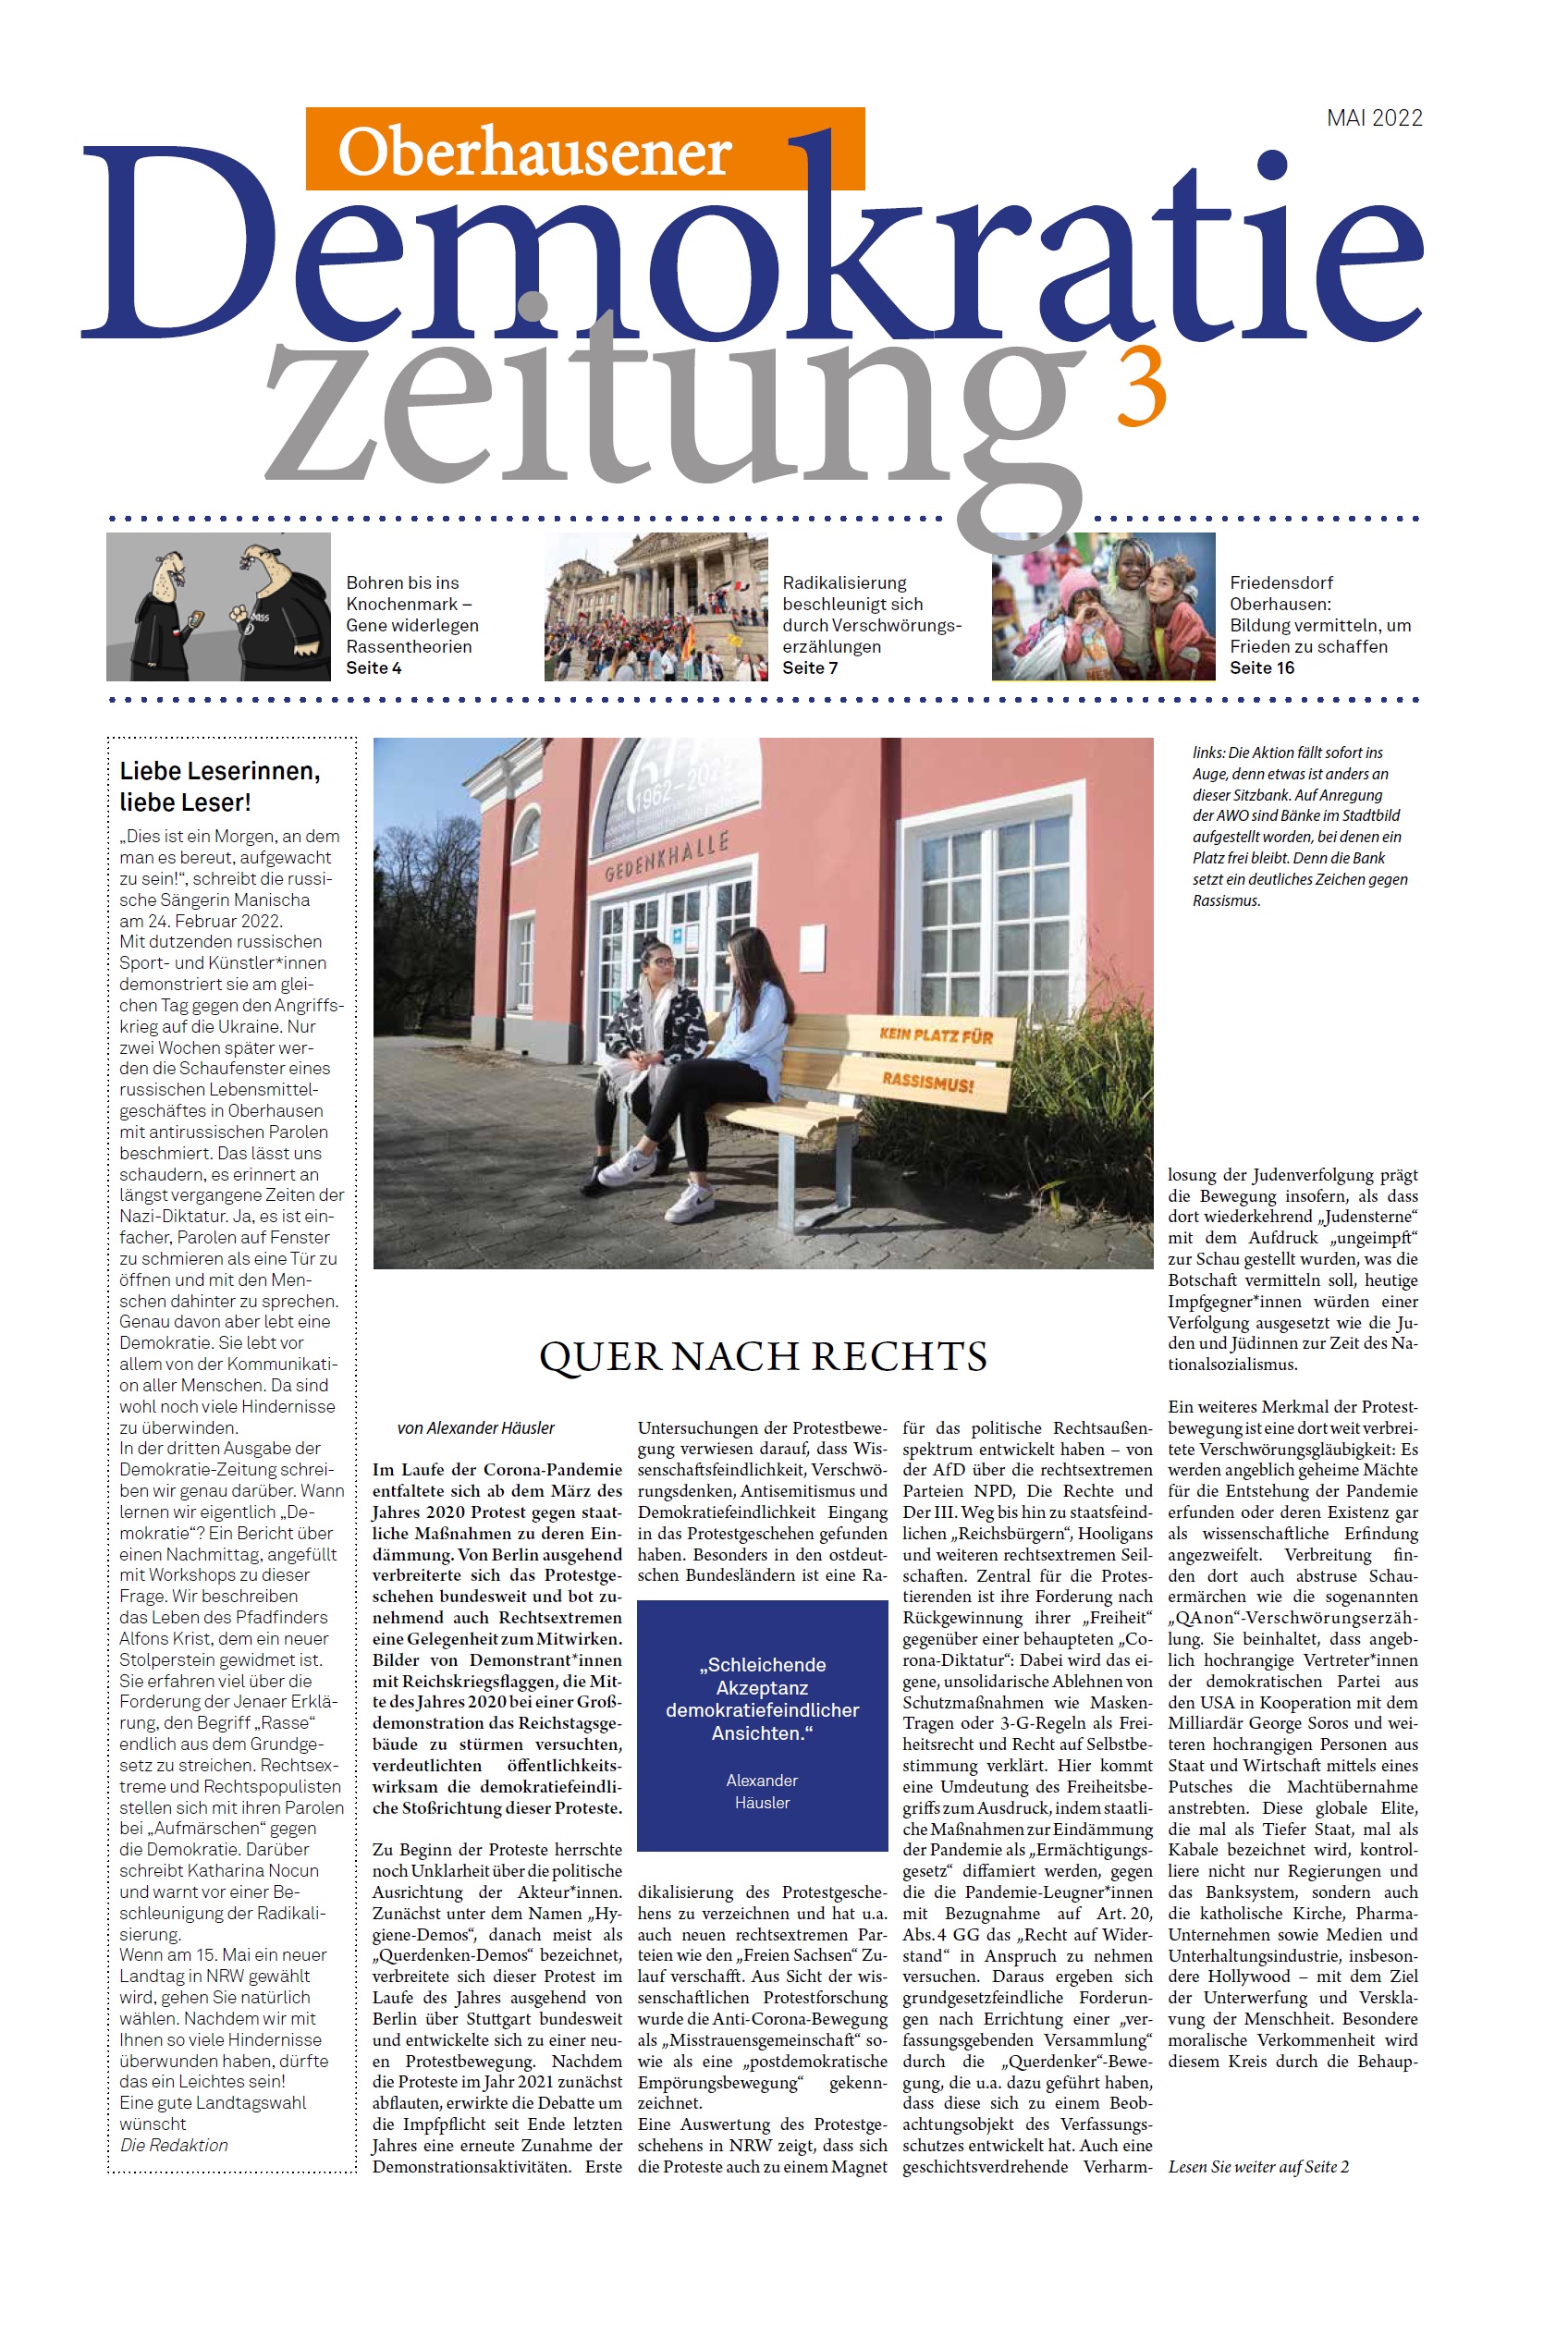 Das Bild zeigt das Titelbild der 3. Ausgabe der Oberhausener Demokratiezeitung